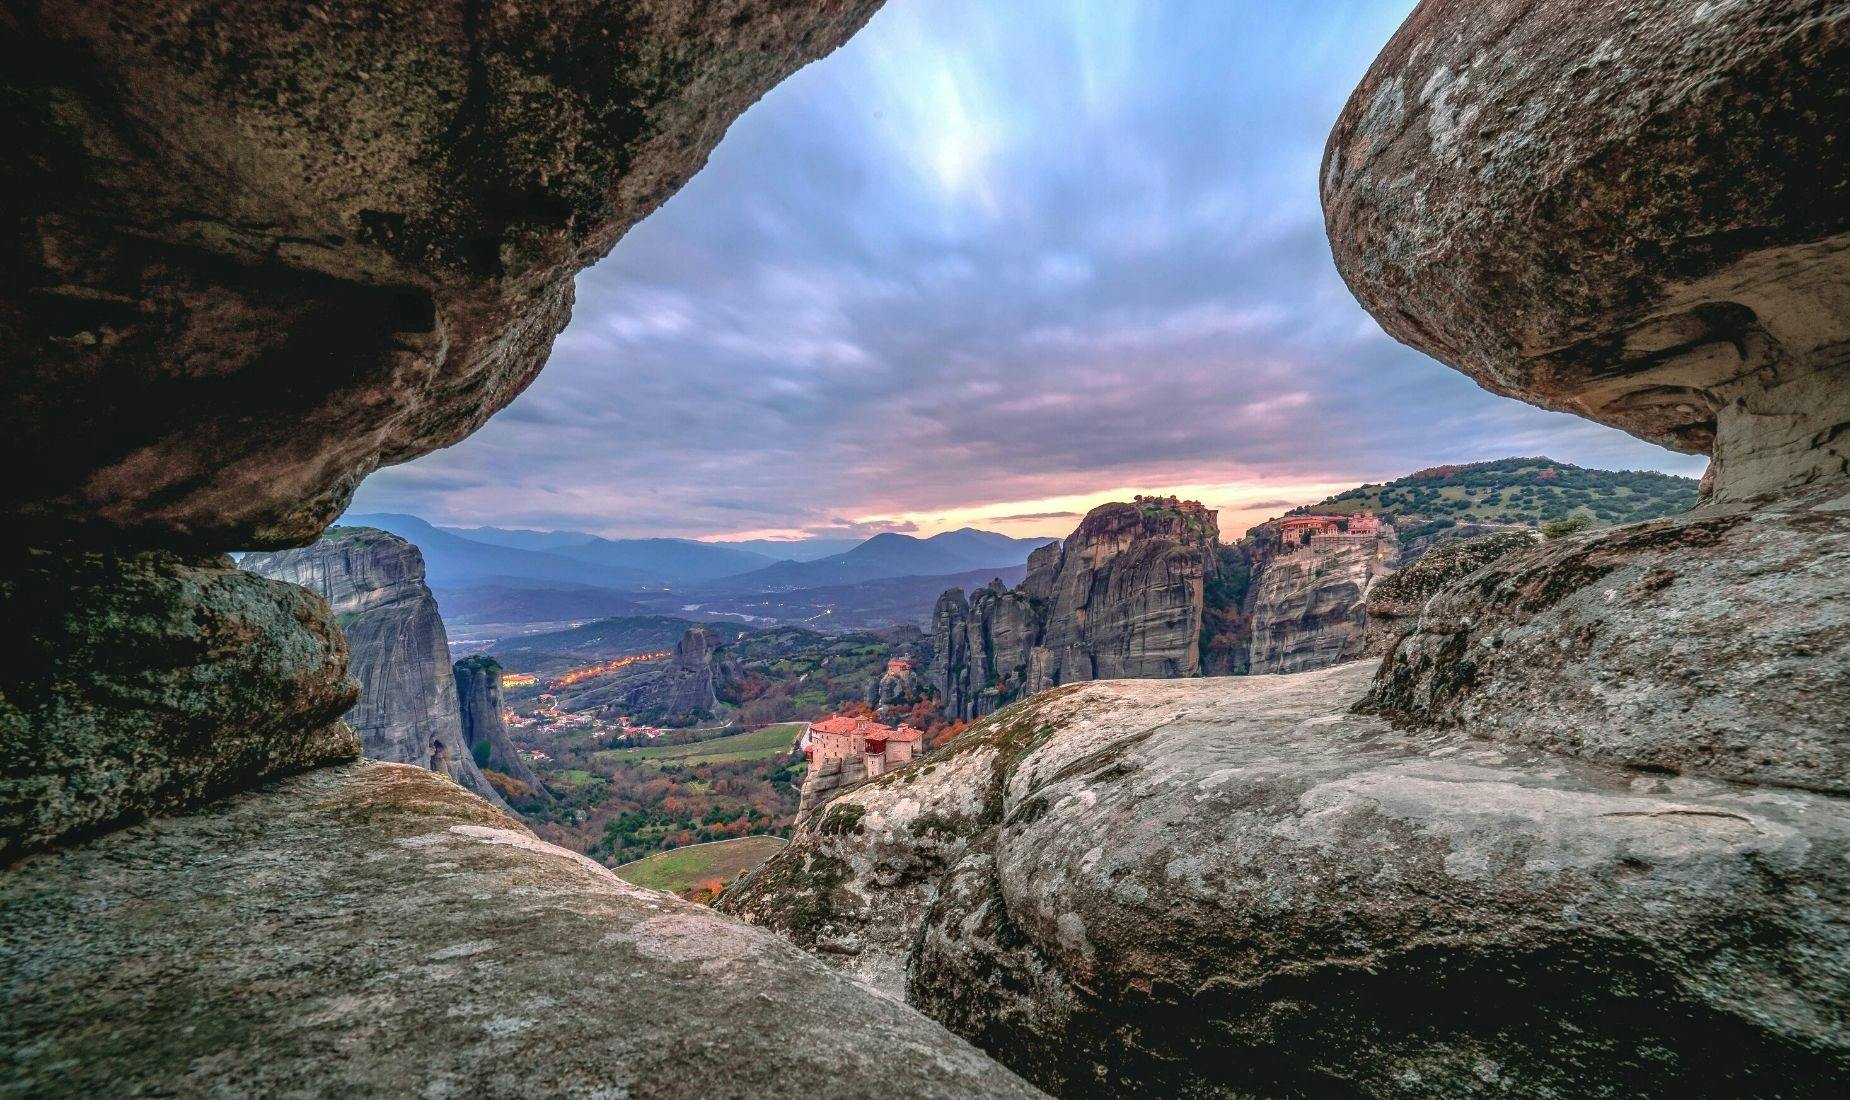 Sonnenuntergangswanderung zu den geheimen Meteora-Höhlen von Kalambaka